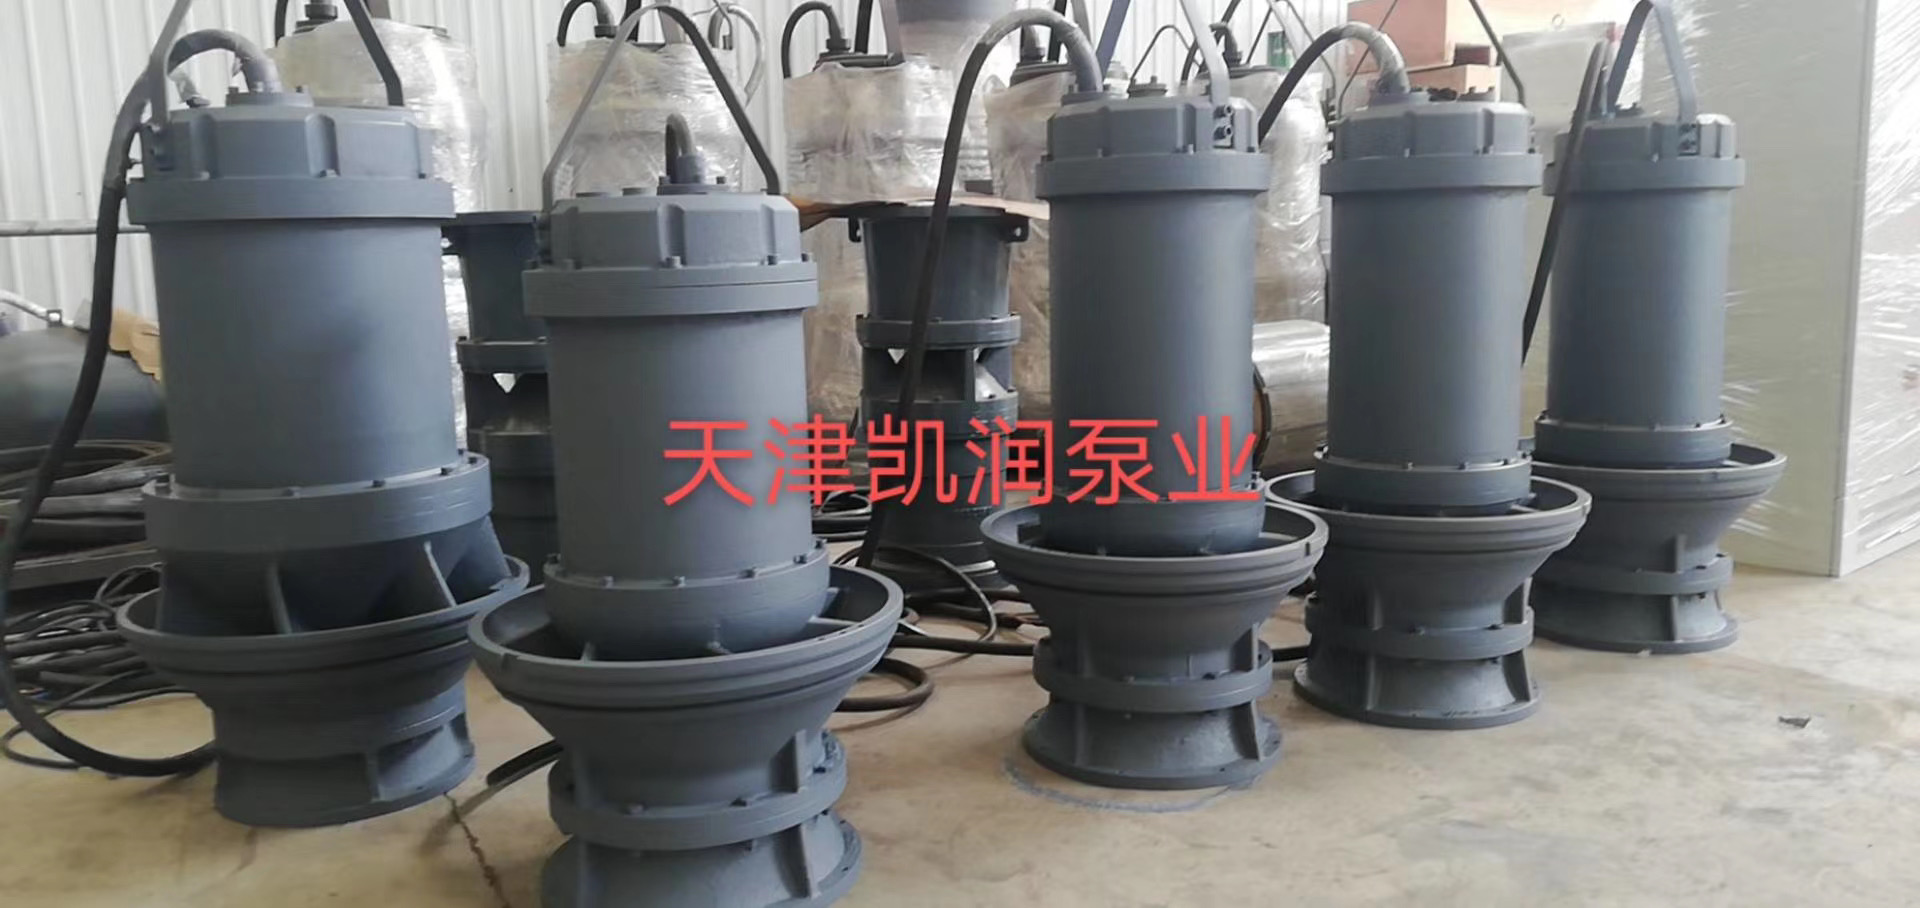 600QZB-100潜水轴流泵-天津凯润泵业